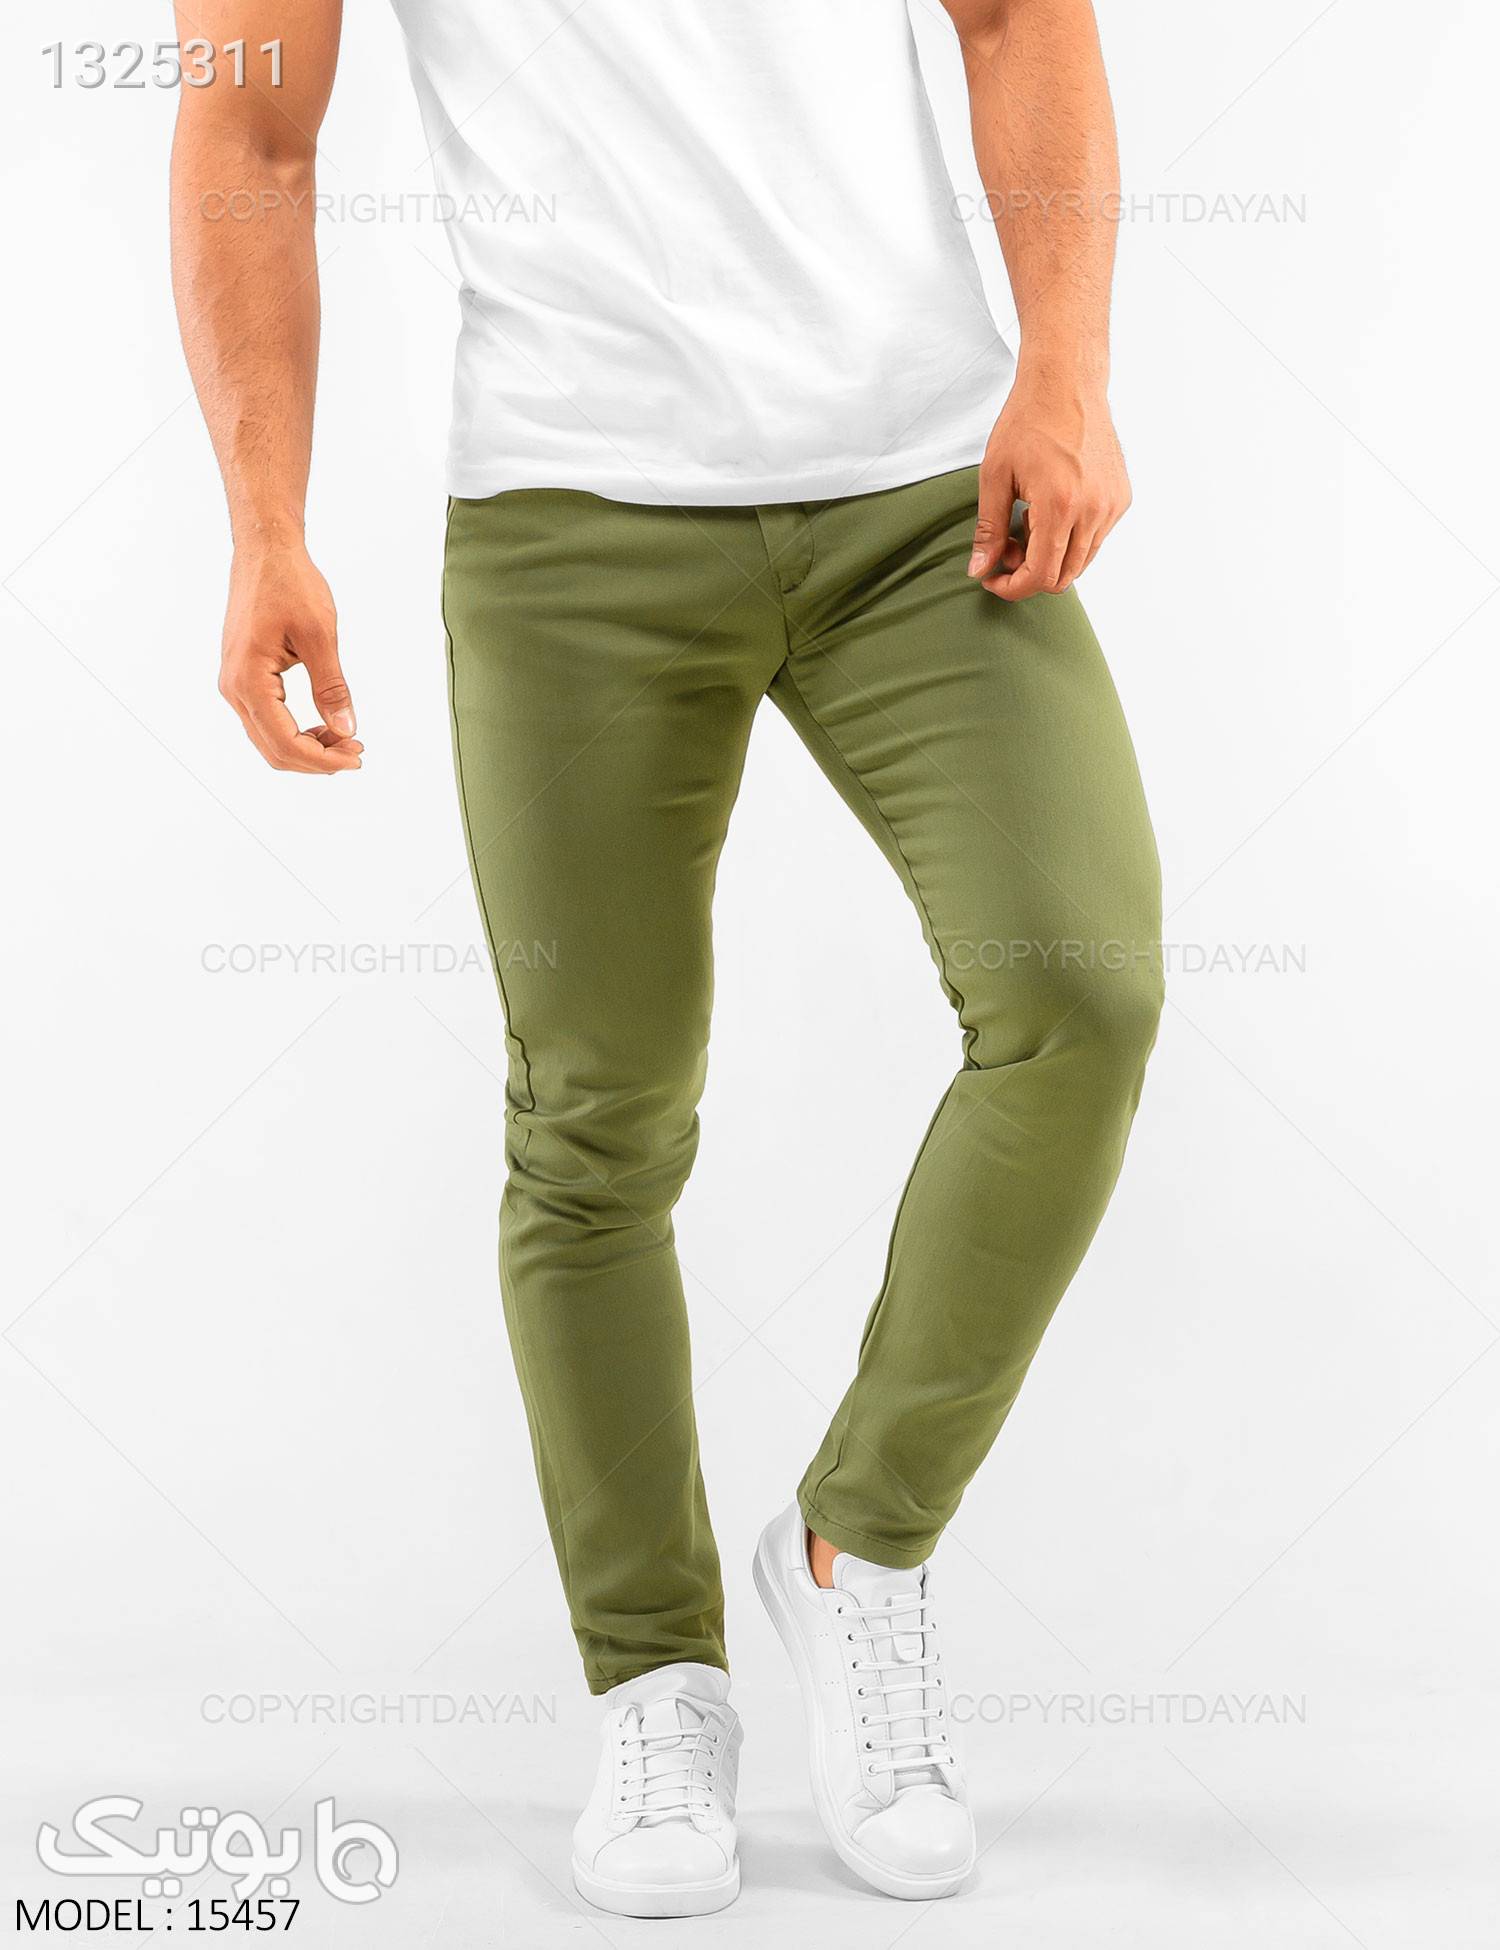 شلوار مردانه karen مدل 15457 سبز شلوار مردانه پارچه ای و کتان مردانه